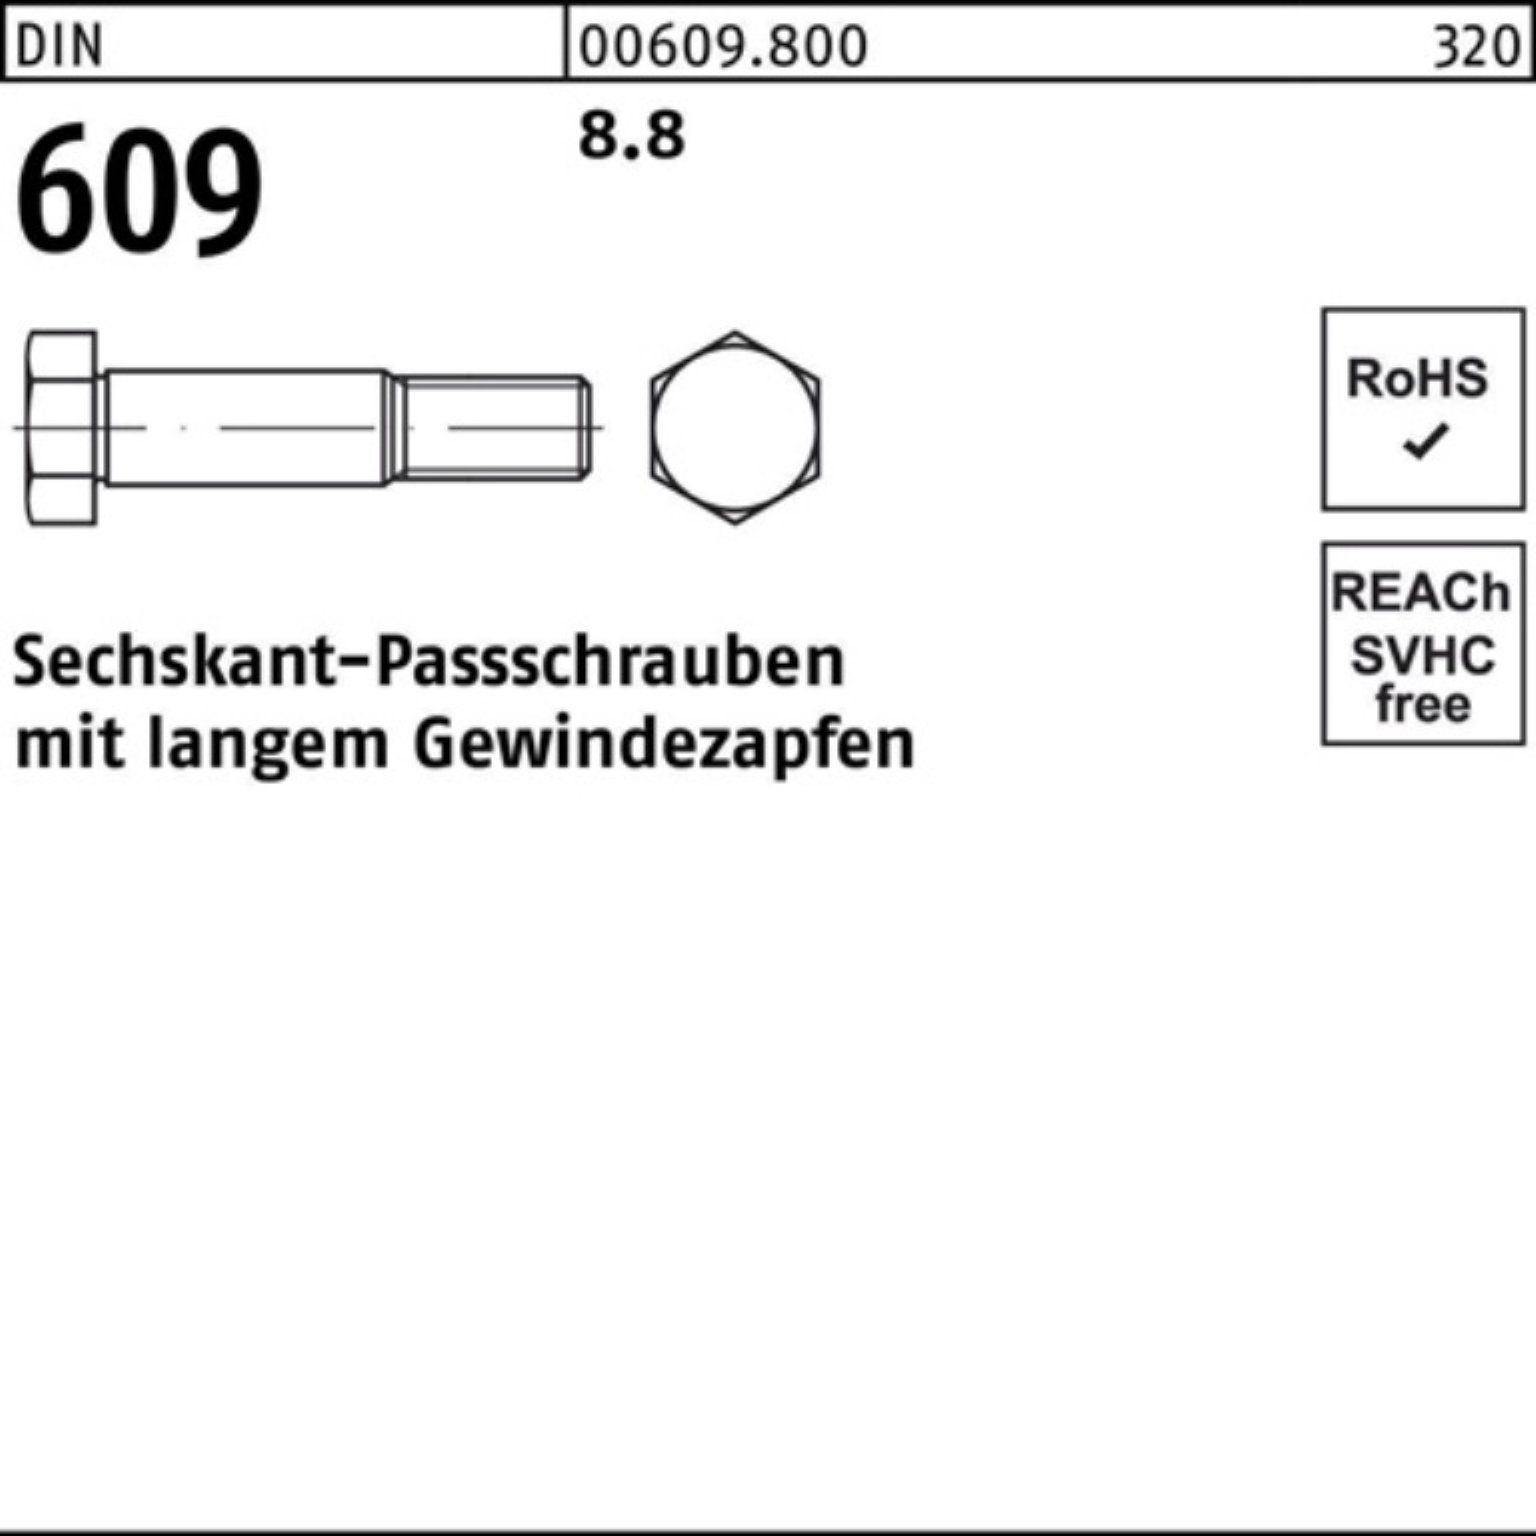 DIN M30x Sechskantpassschraube 110 Schraube Reyher Gewindezapfen Pack 100er langem 609